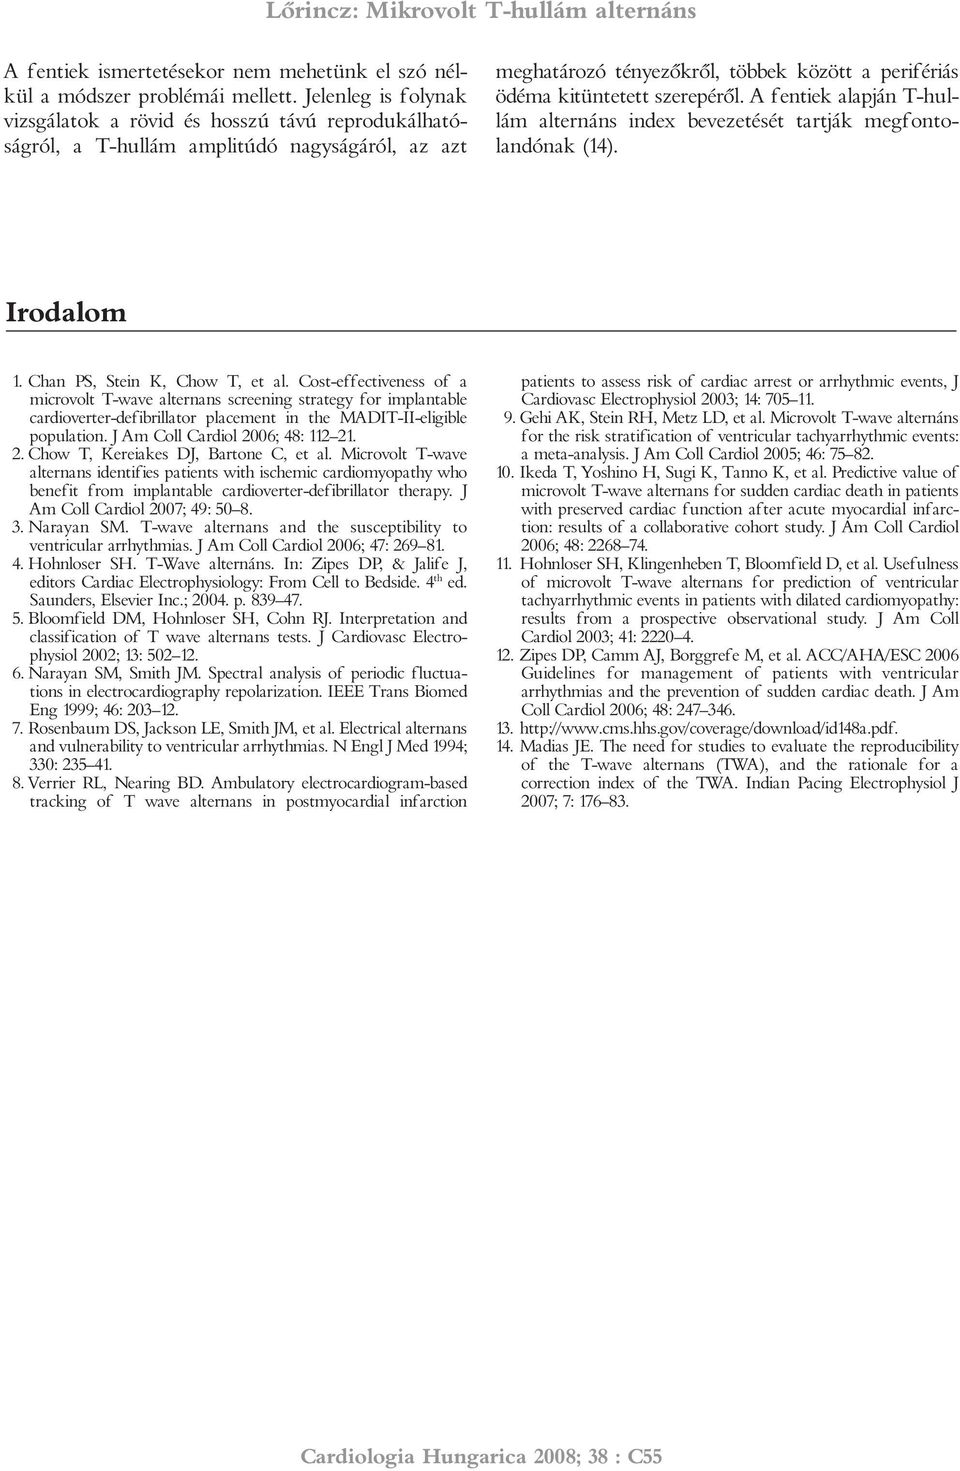 A fentiek alapján T-hullám alternáns index bevezetését tartják megfontolandónak (14). Irodalom 1. Chan PS, Stein K, Chow T, et al.